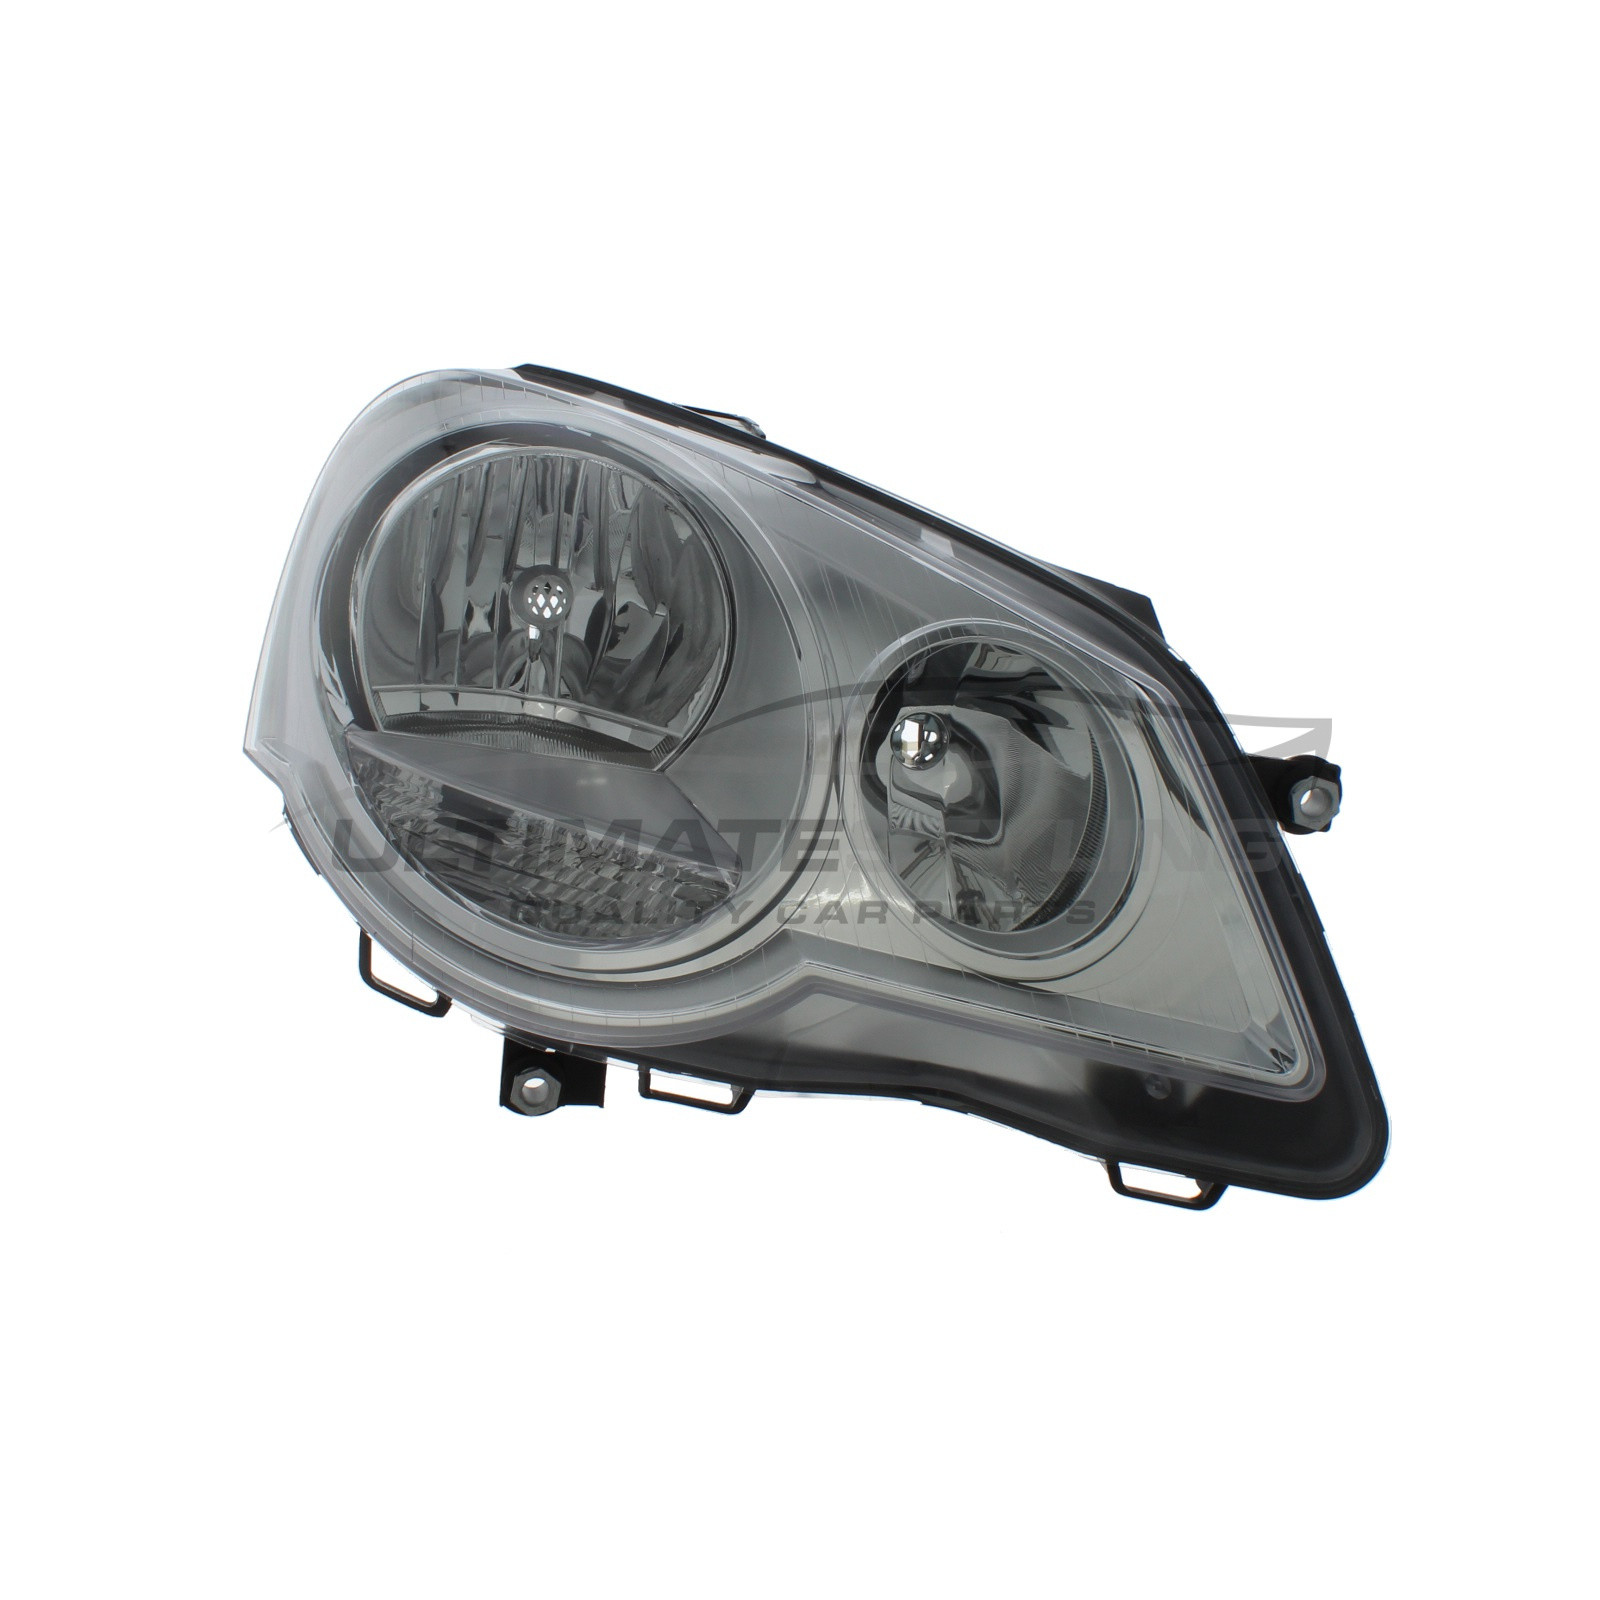 Headlight / Headlamp for VW Polo